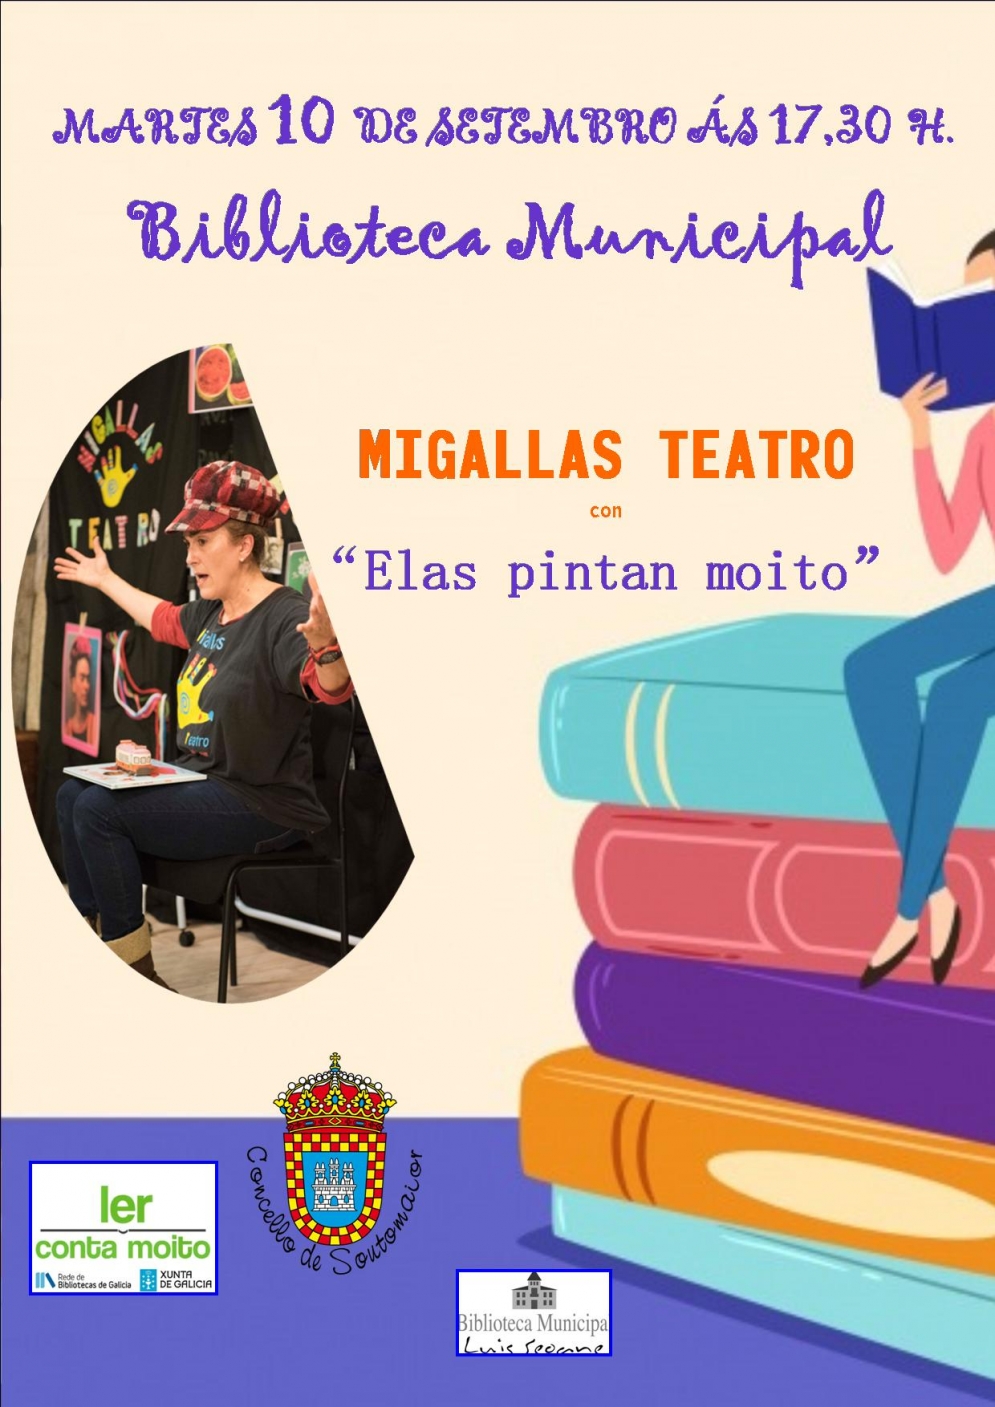 Teatro Migallas